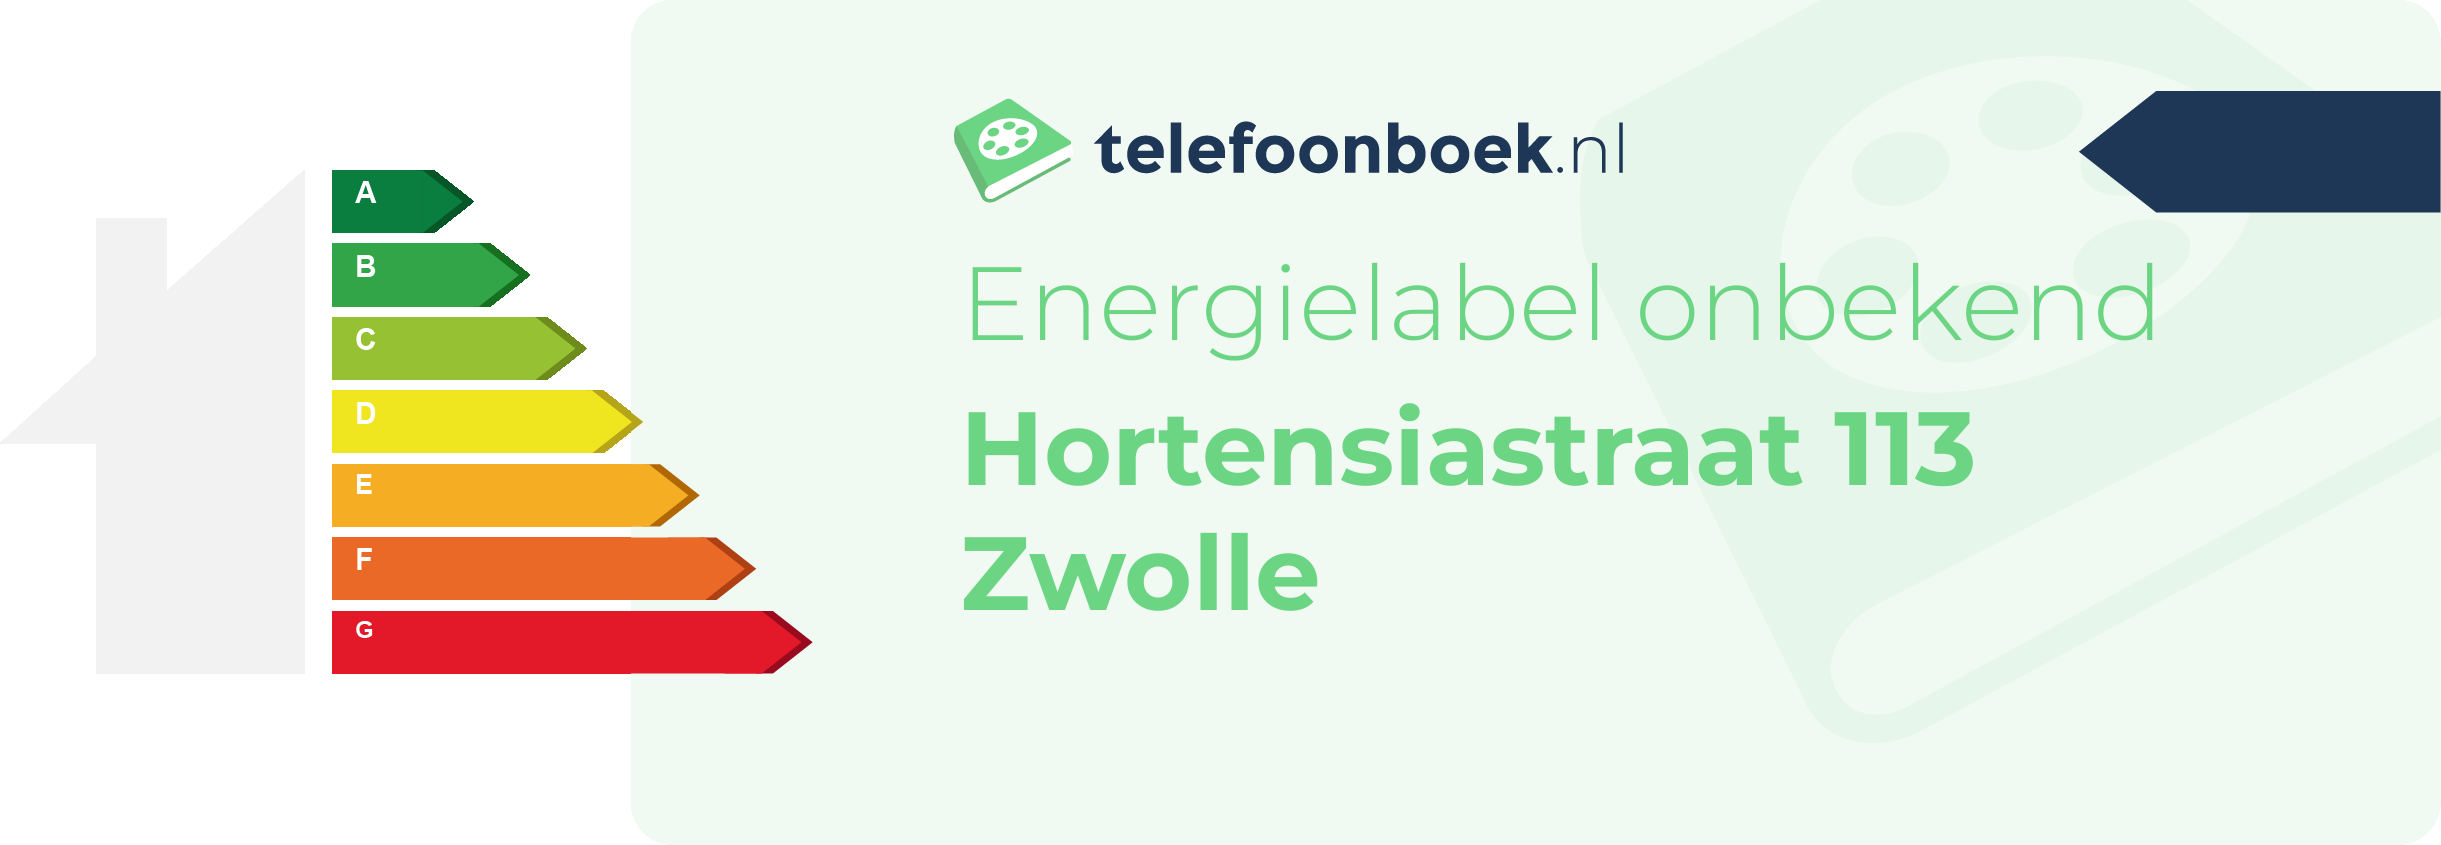 Energielabel Hortensiastraat 113 Zwolle